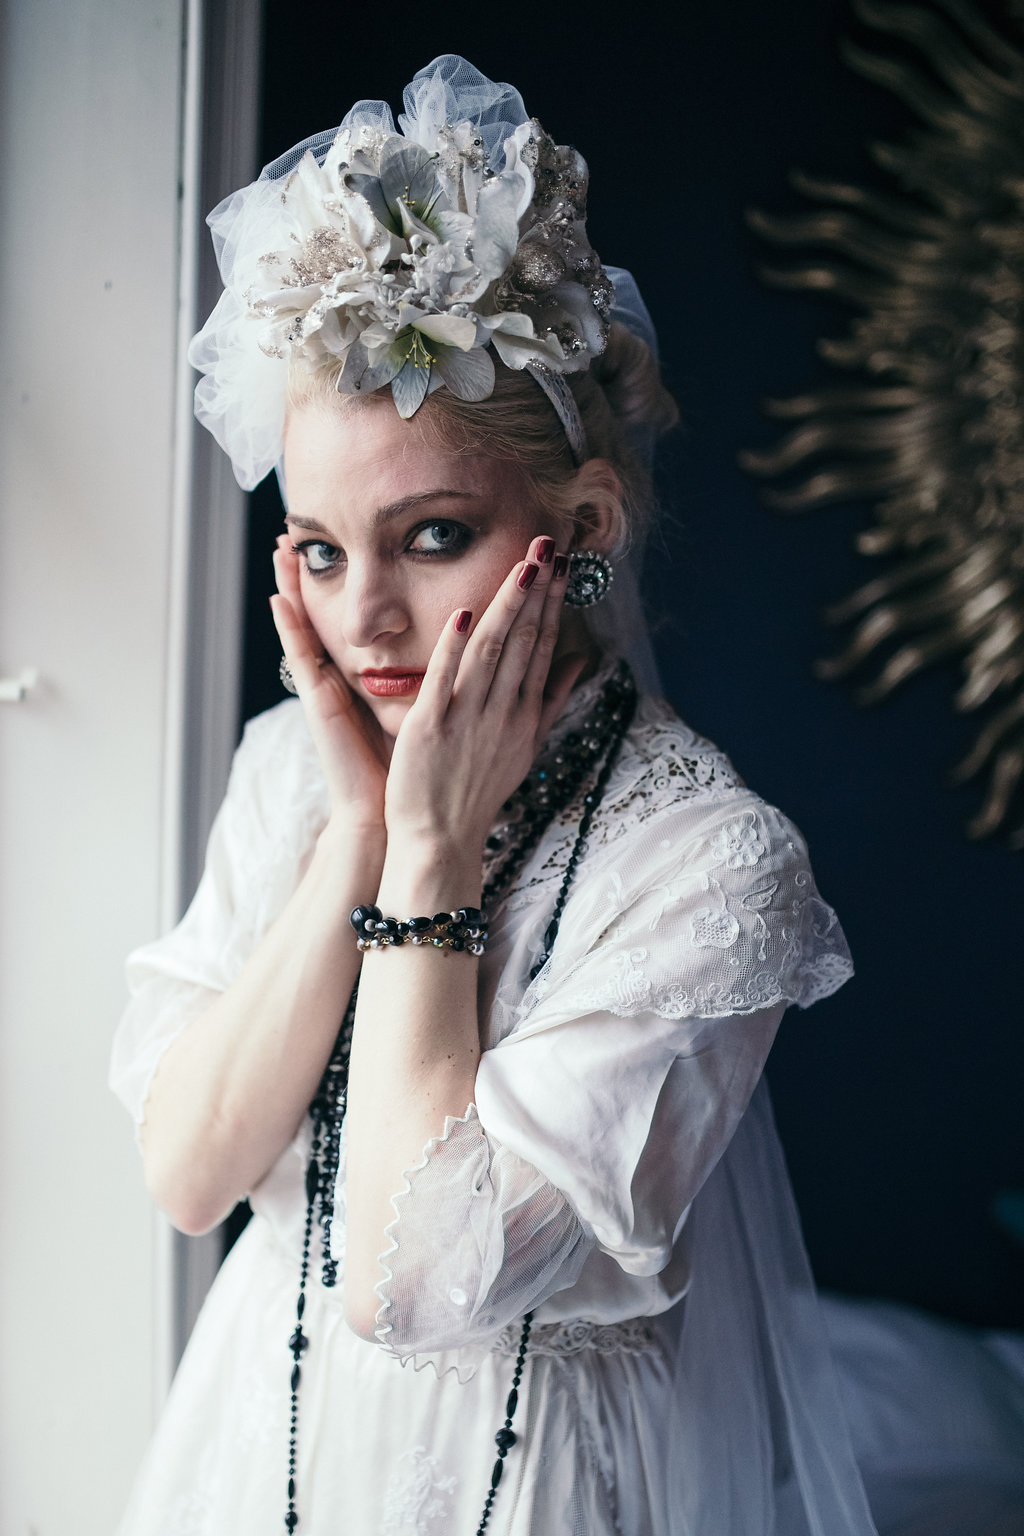 Dark yet Dreamy Alternative Bridal Style Madonna Inspired Shoot